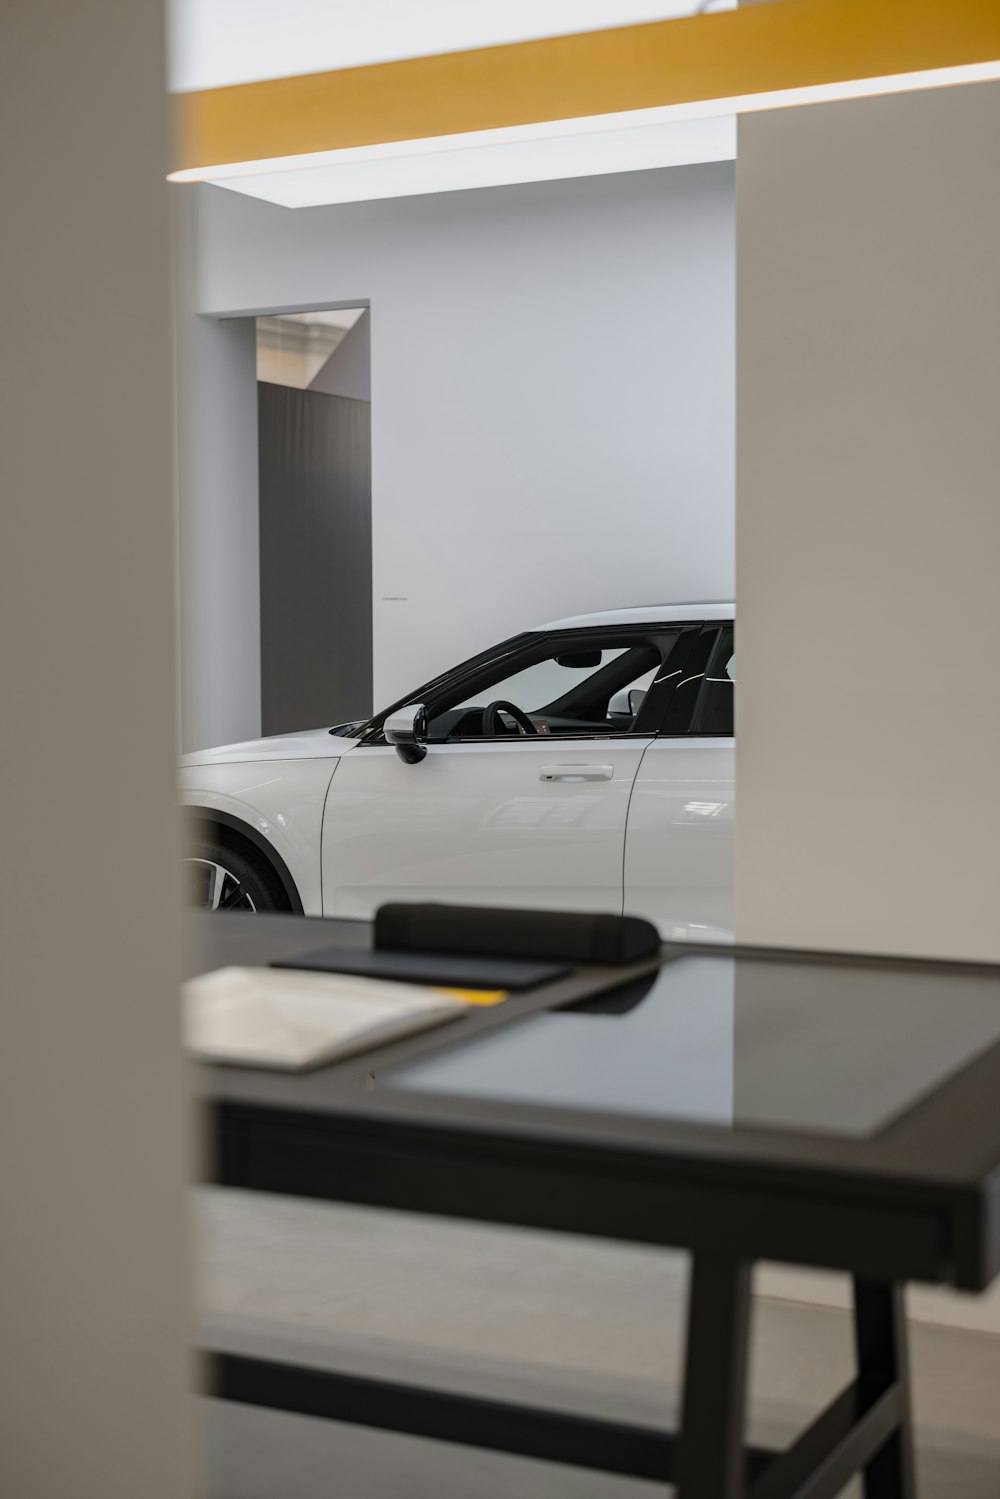 Un coche blanco está aparcado en una sala de exposición